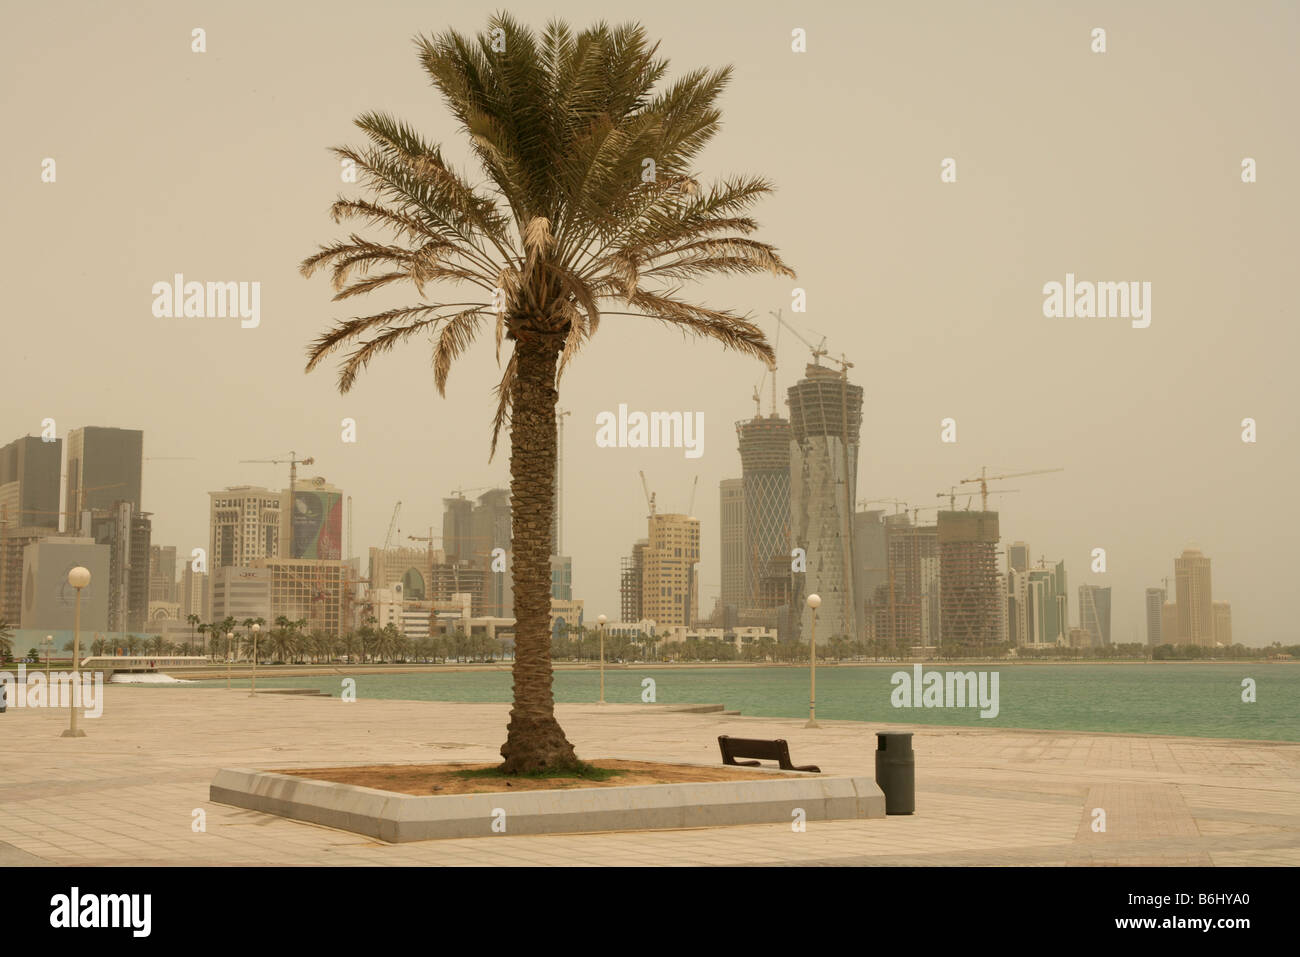 Vista panorámica a lo largo de la Corniche, el paseo marítimo con la construcción de grúas en el horizonte de rascacielos, Doha, Qatar, Oriente Medio Foto de stock